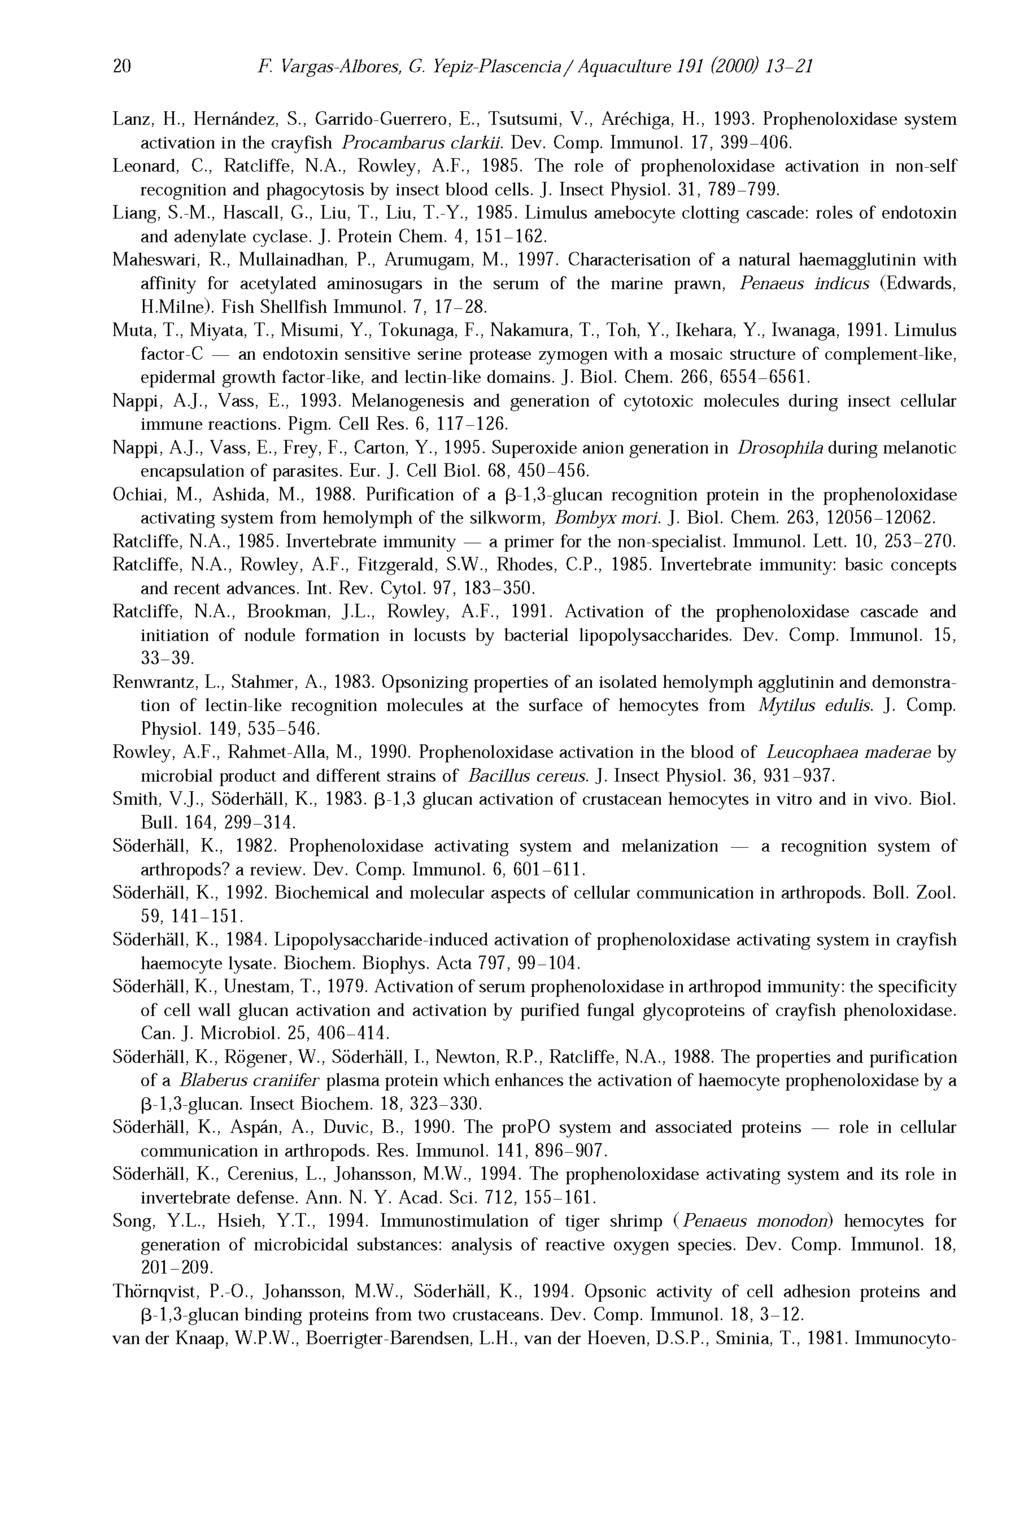 20 F. Vargas-Albores, G. Yepiz-Plascencia/ Aquaculture 191 (2000) 13-21 Lanz, H., Hernández, S., Garrido-Guerrero, E., Tsutsumi, V., Aréchiga, H., 1993.